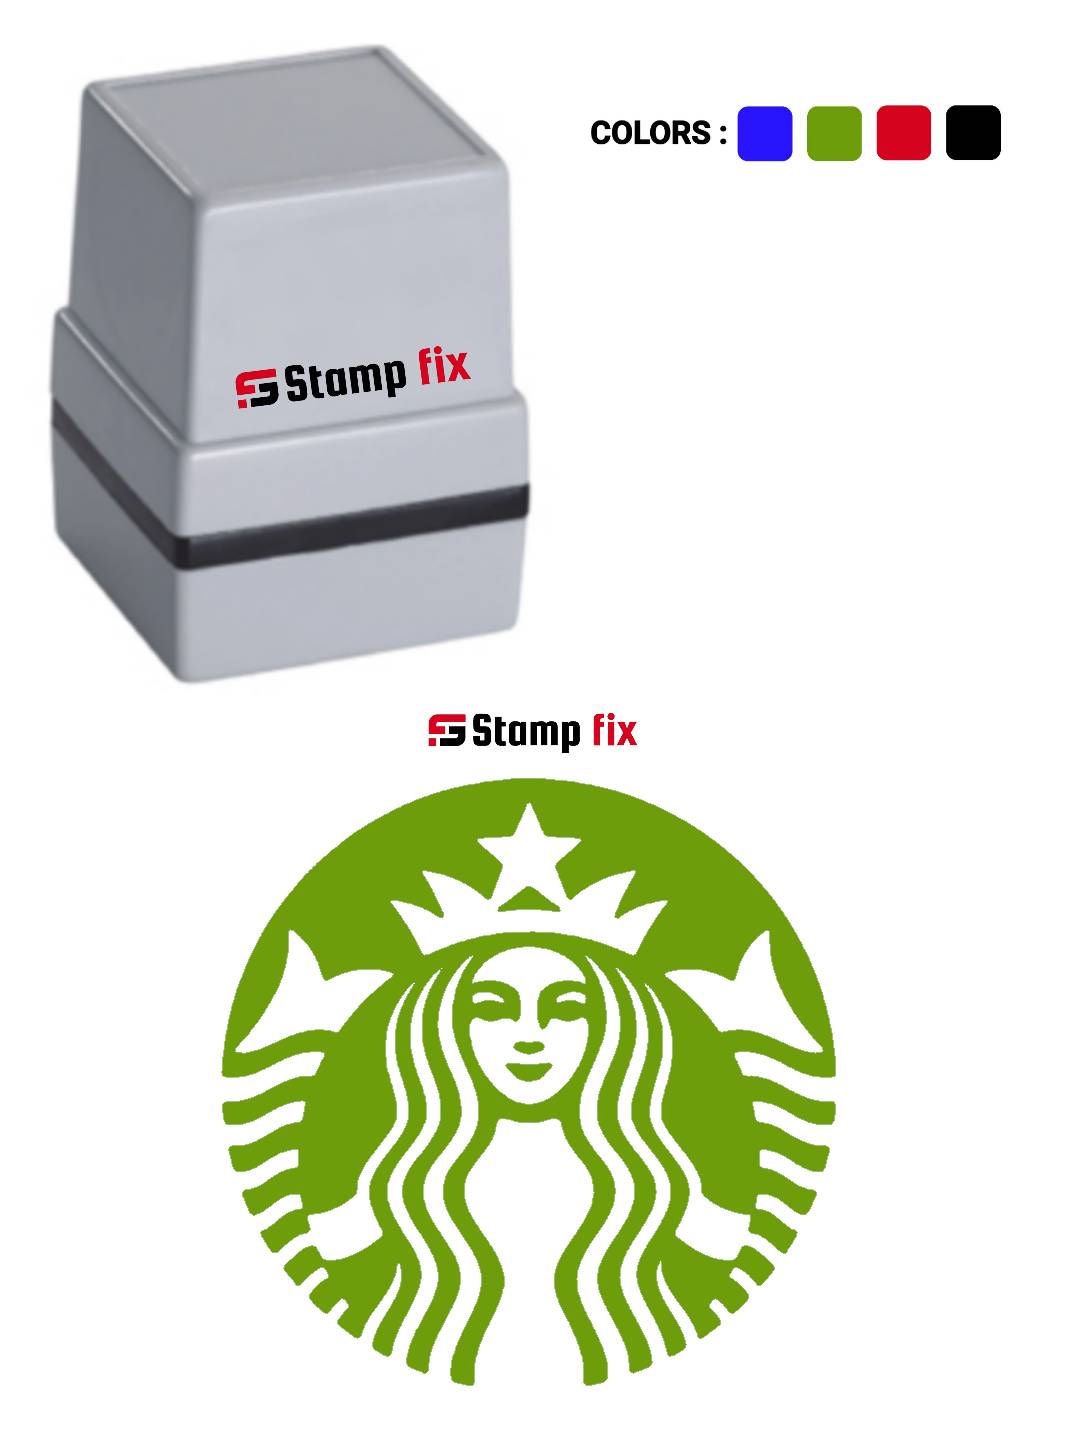 pre ink pocket stamp, custom Logo stamp, Self ink stamp, pre ink stamp, sun stamp, rubber stamp, nylon stamp, polymer stamp